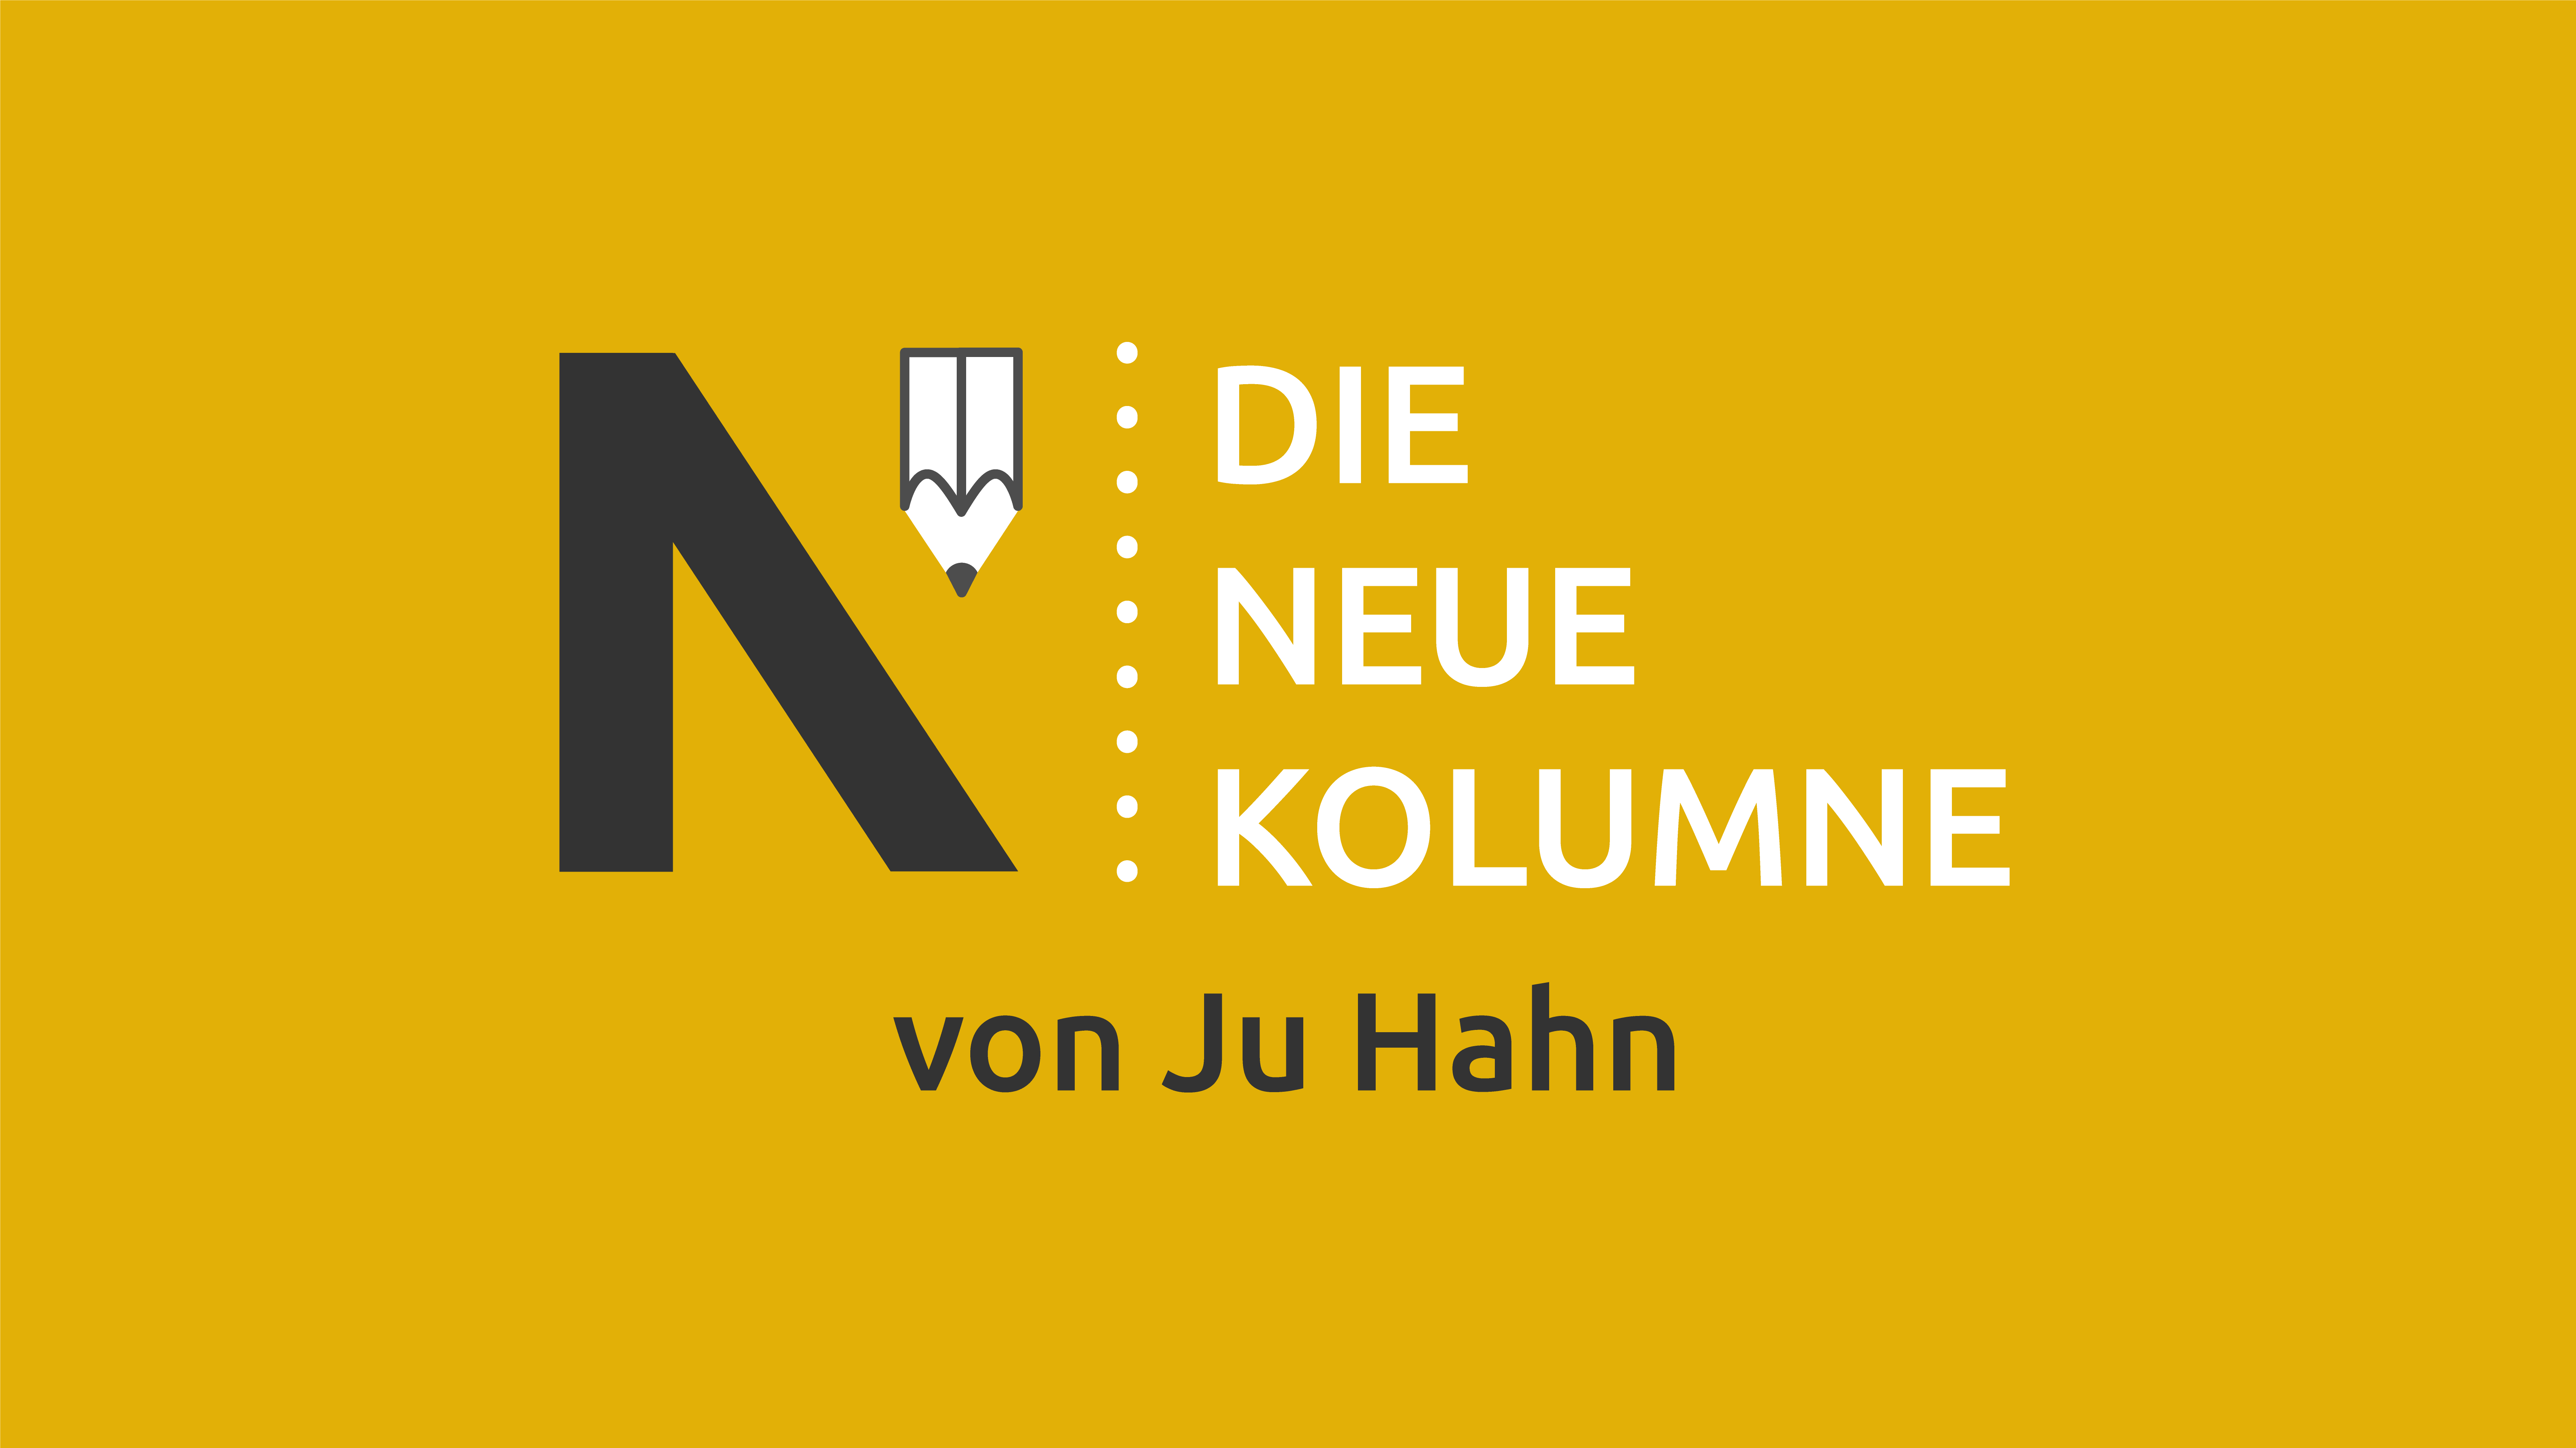 Das Logo von Die Neue Norm auf gelbem Grund. Rechts davon steht: Die Neue Kolumne. Unten steht: Von Ju Hahn.